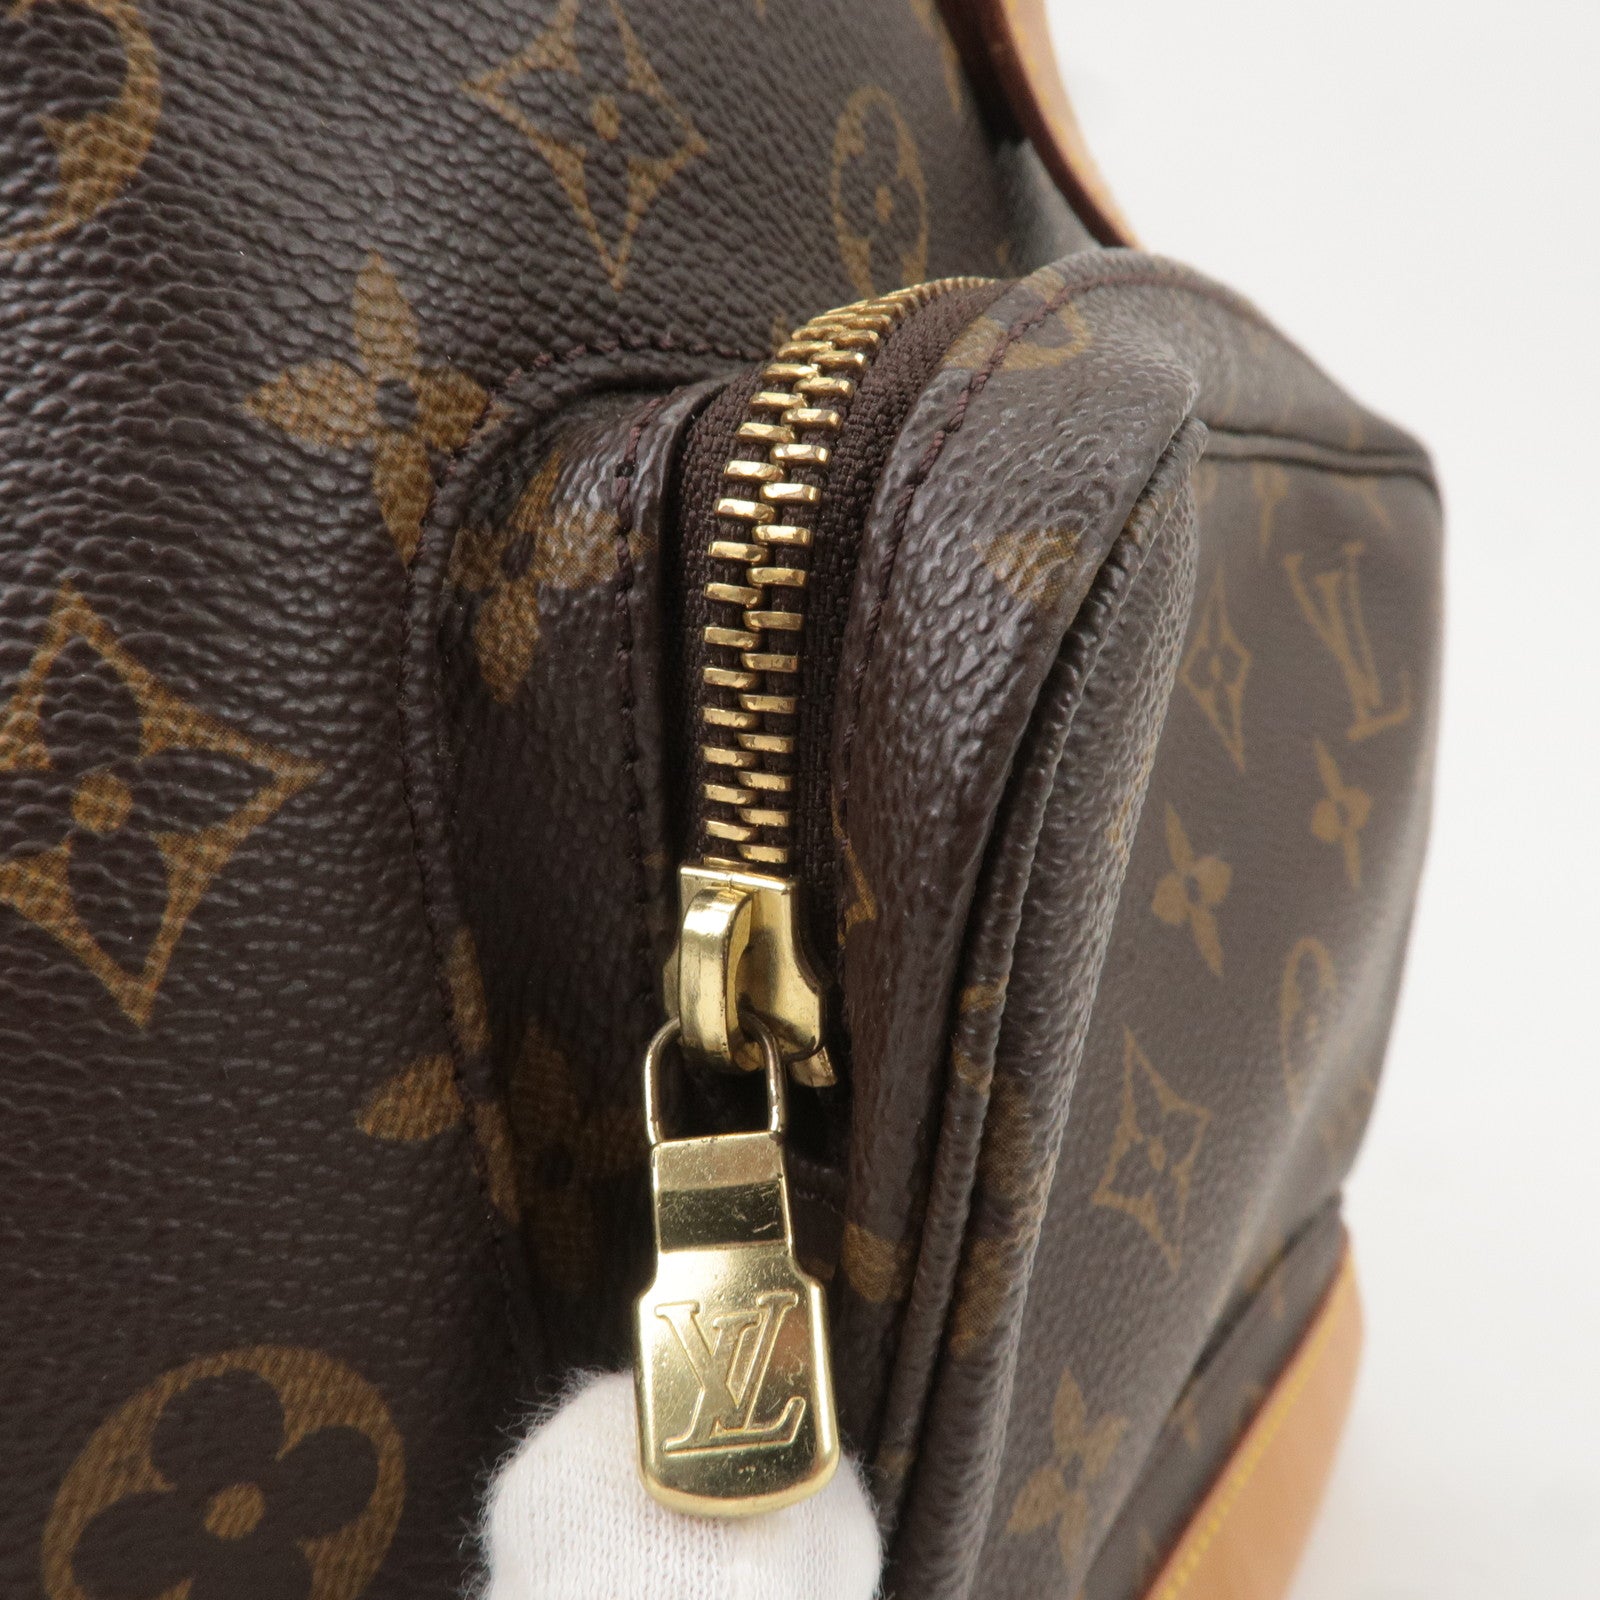 Louis Vuitton, Bags, Louis Vuitton Backpack Monogram Mini Montsouris Gm